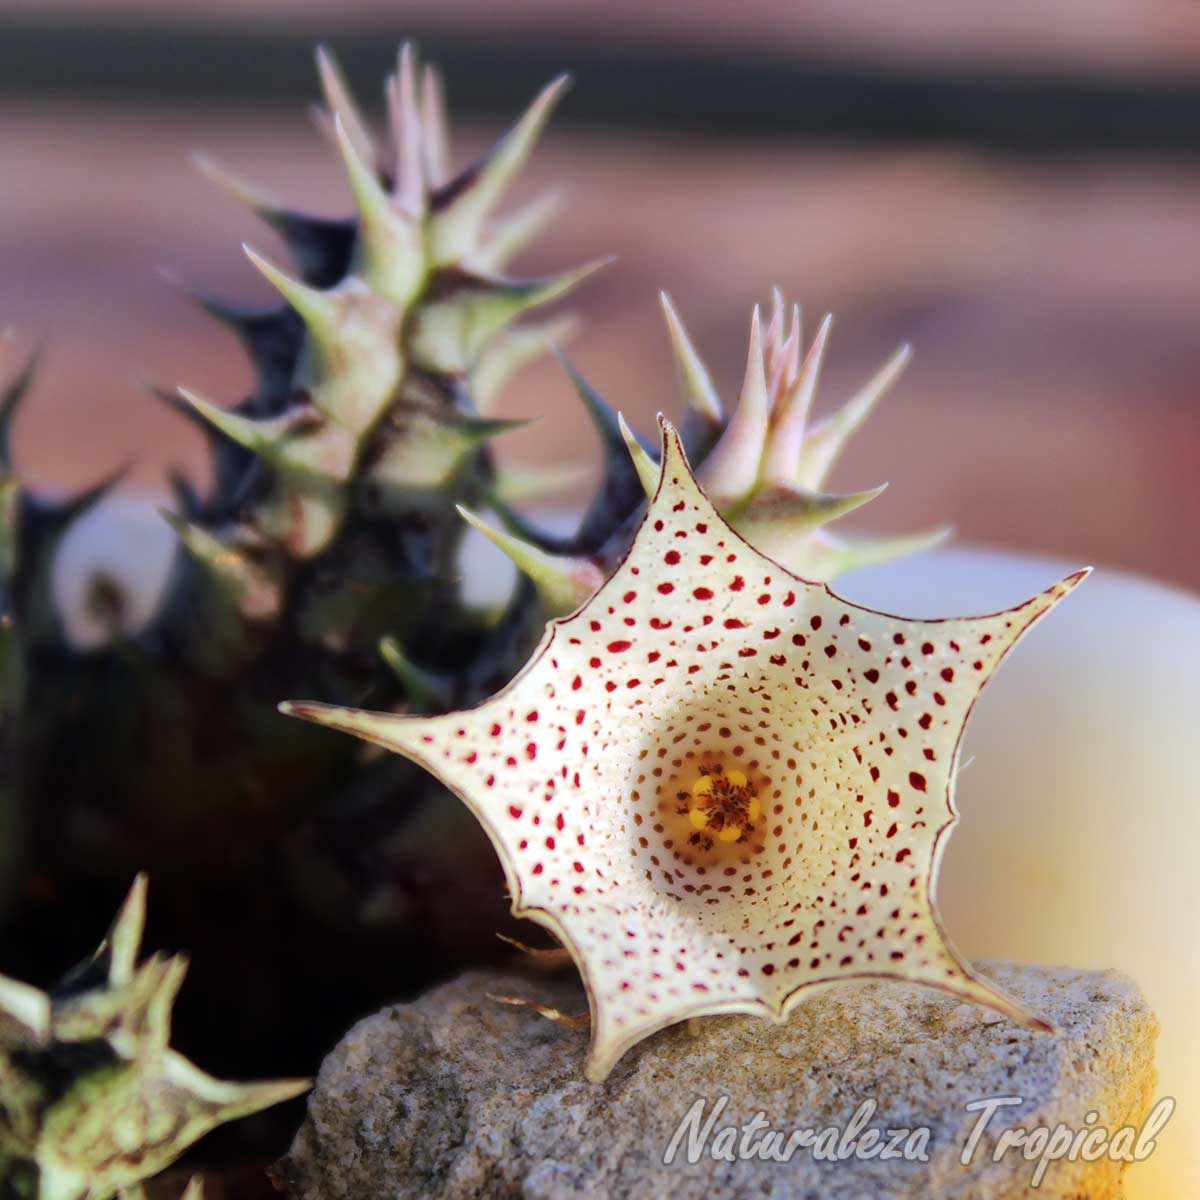 Vista de la flor y tallos de la planta suculenta Huernia delicata